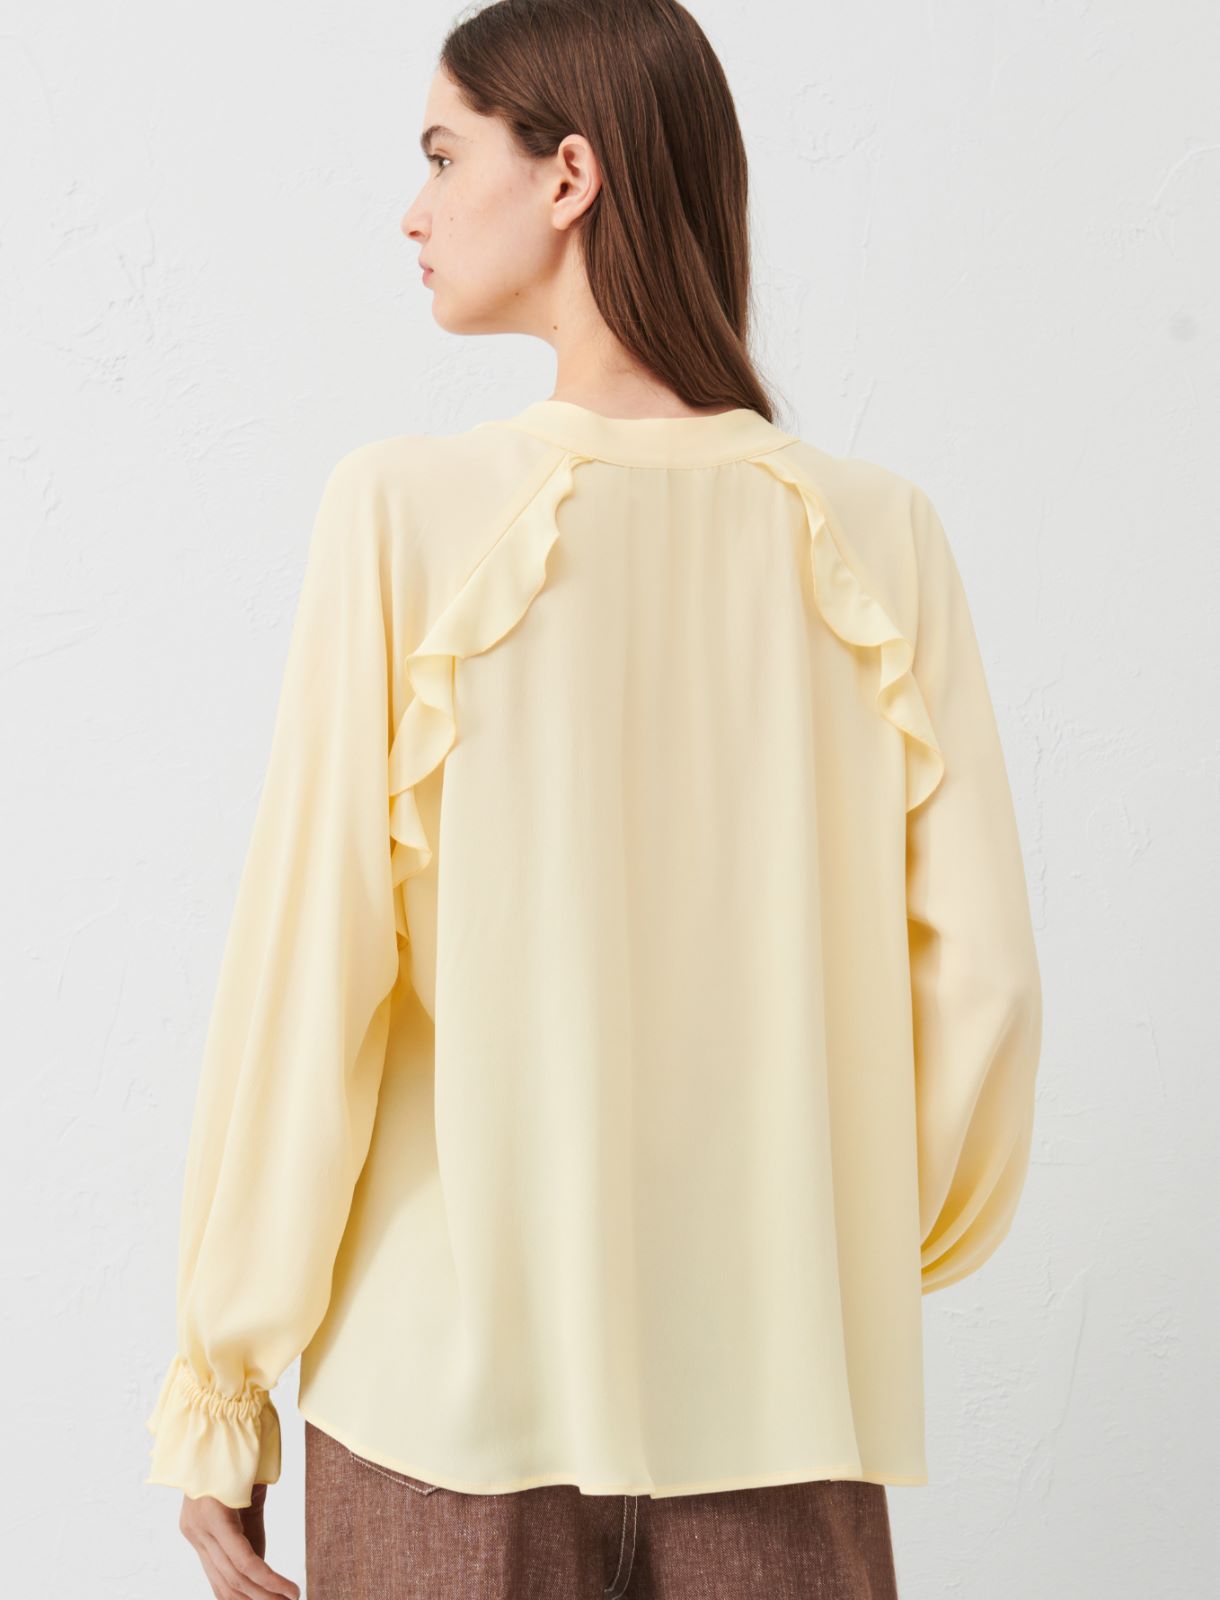 Ruffle blouse, light yellow